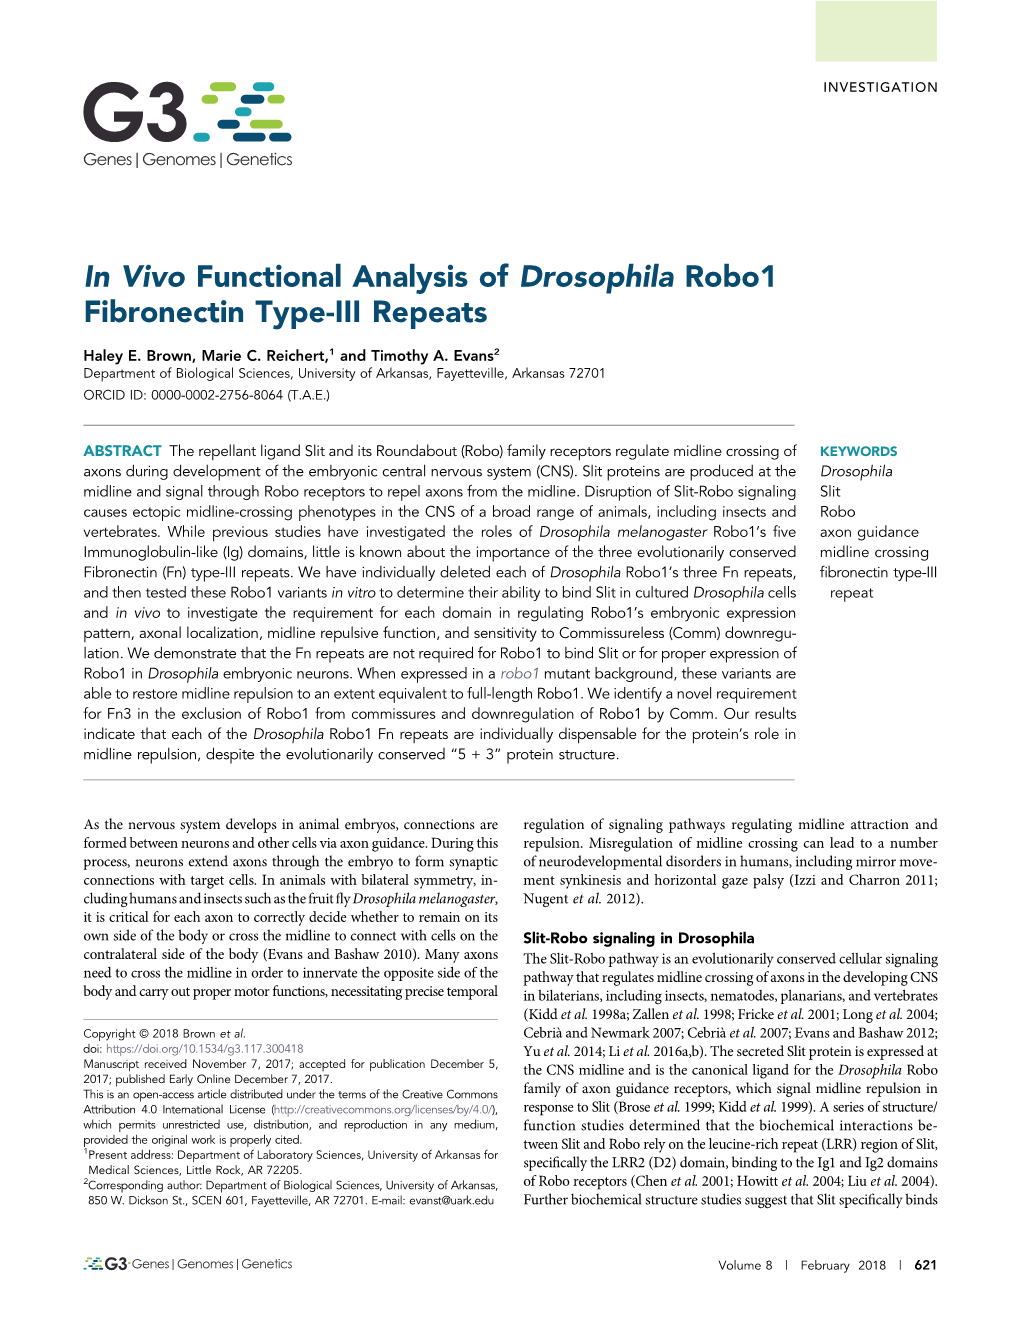 In Vivo Functional Analysis of Drosophila Robo1 Fibronectin Type-III Repeats